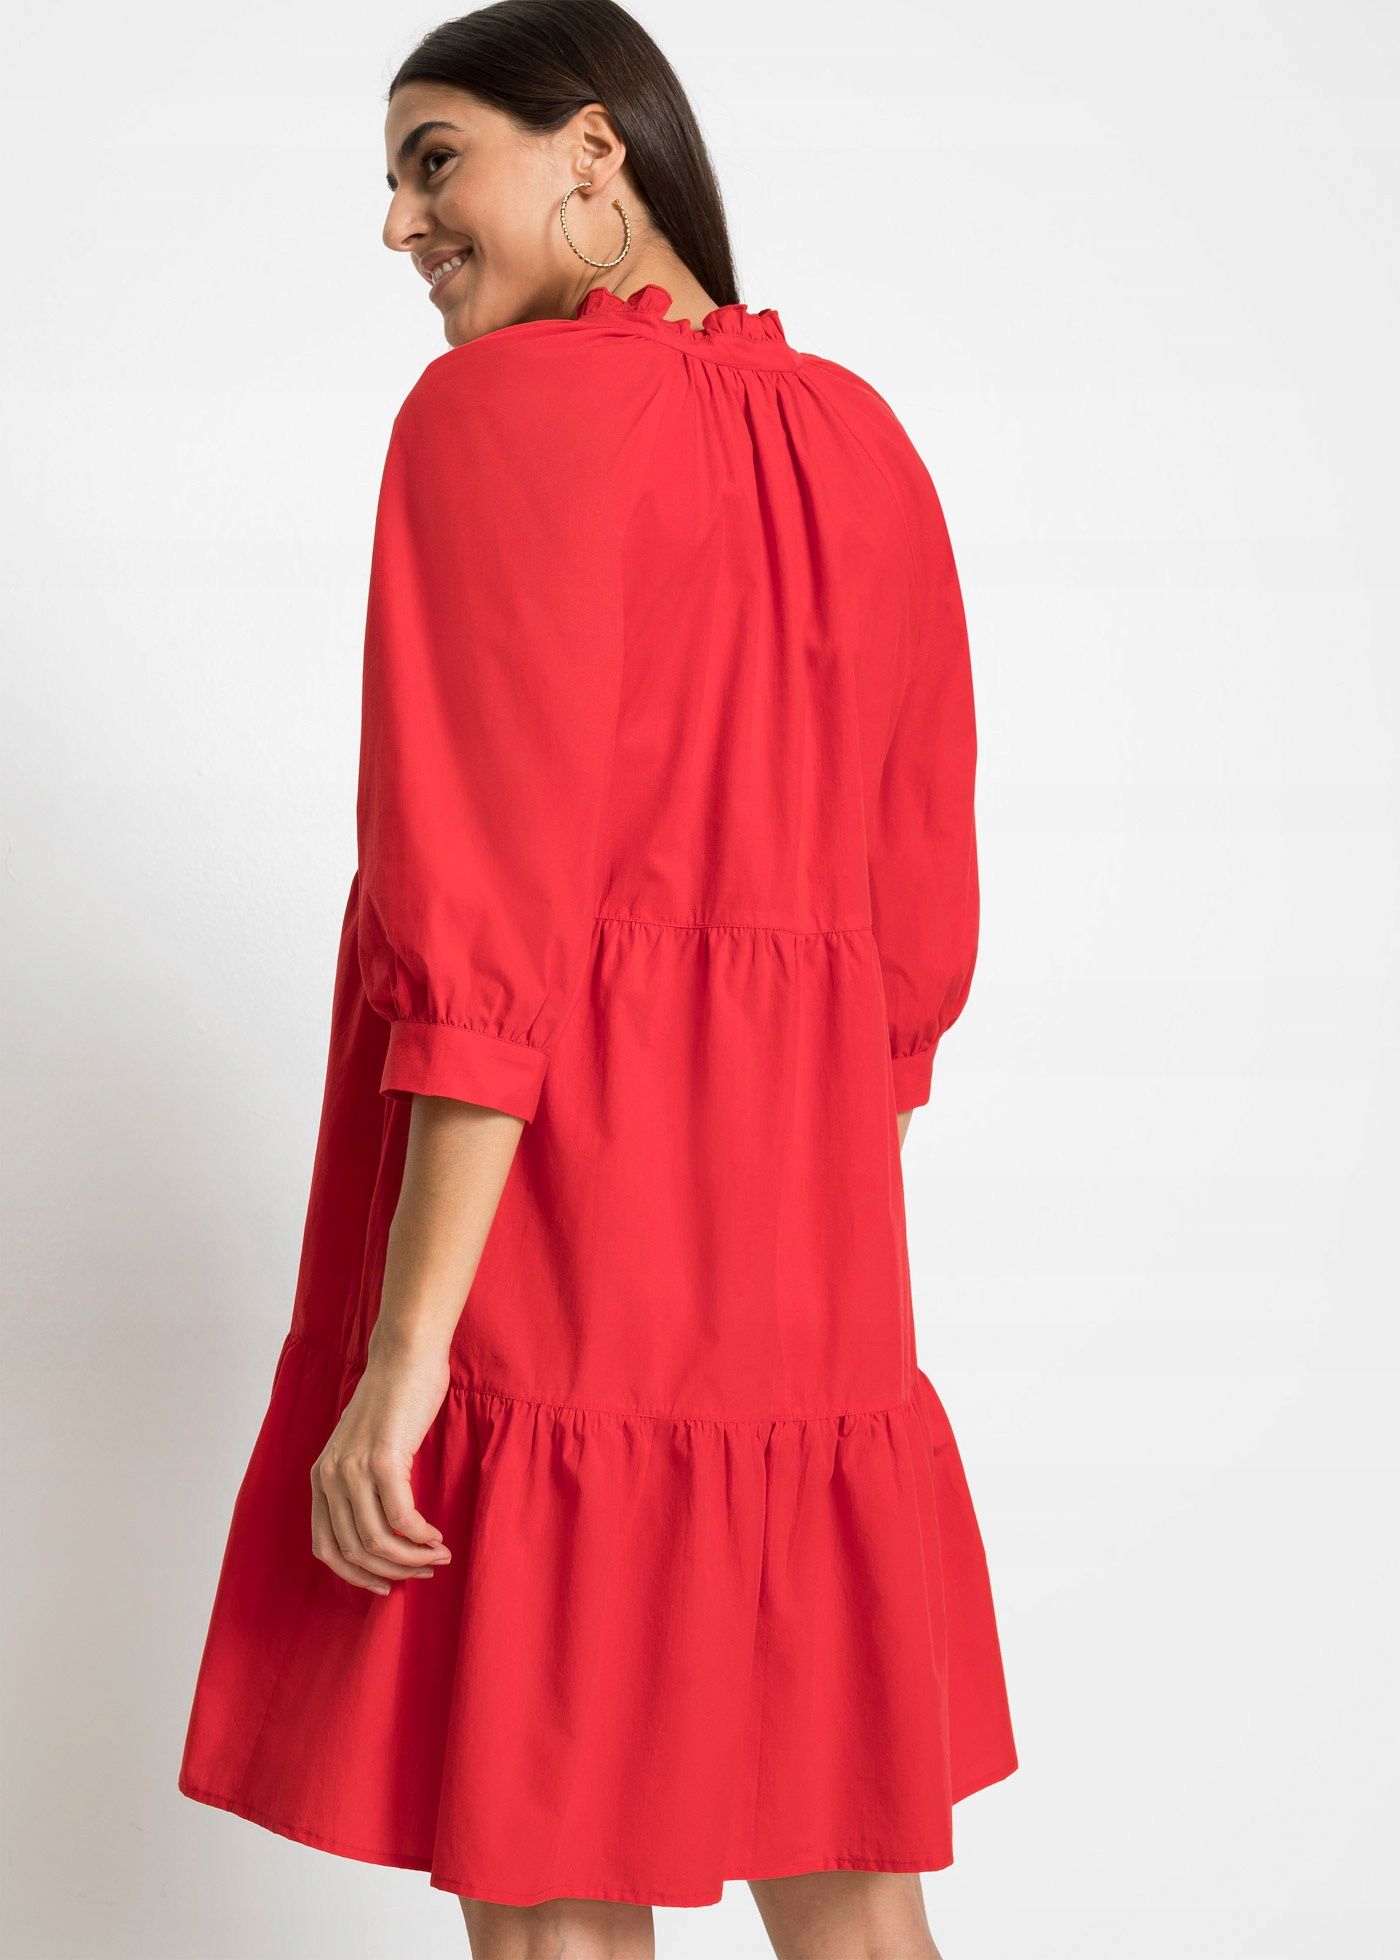 B.P.C sukienka czerwona ze stójką falbany 40.